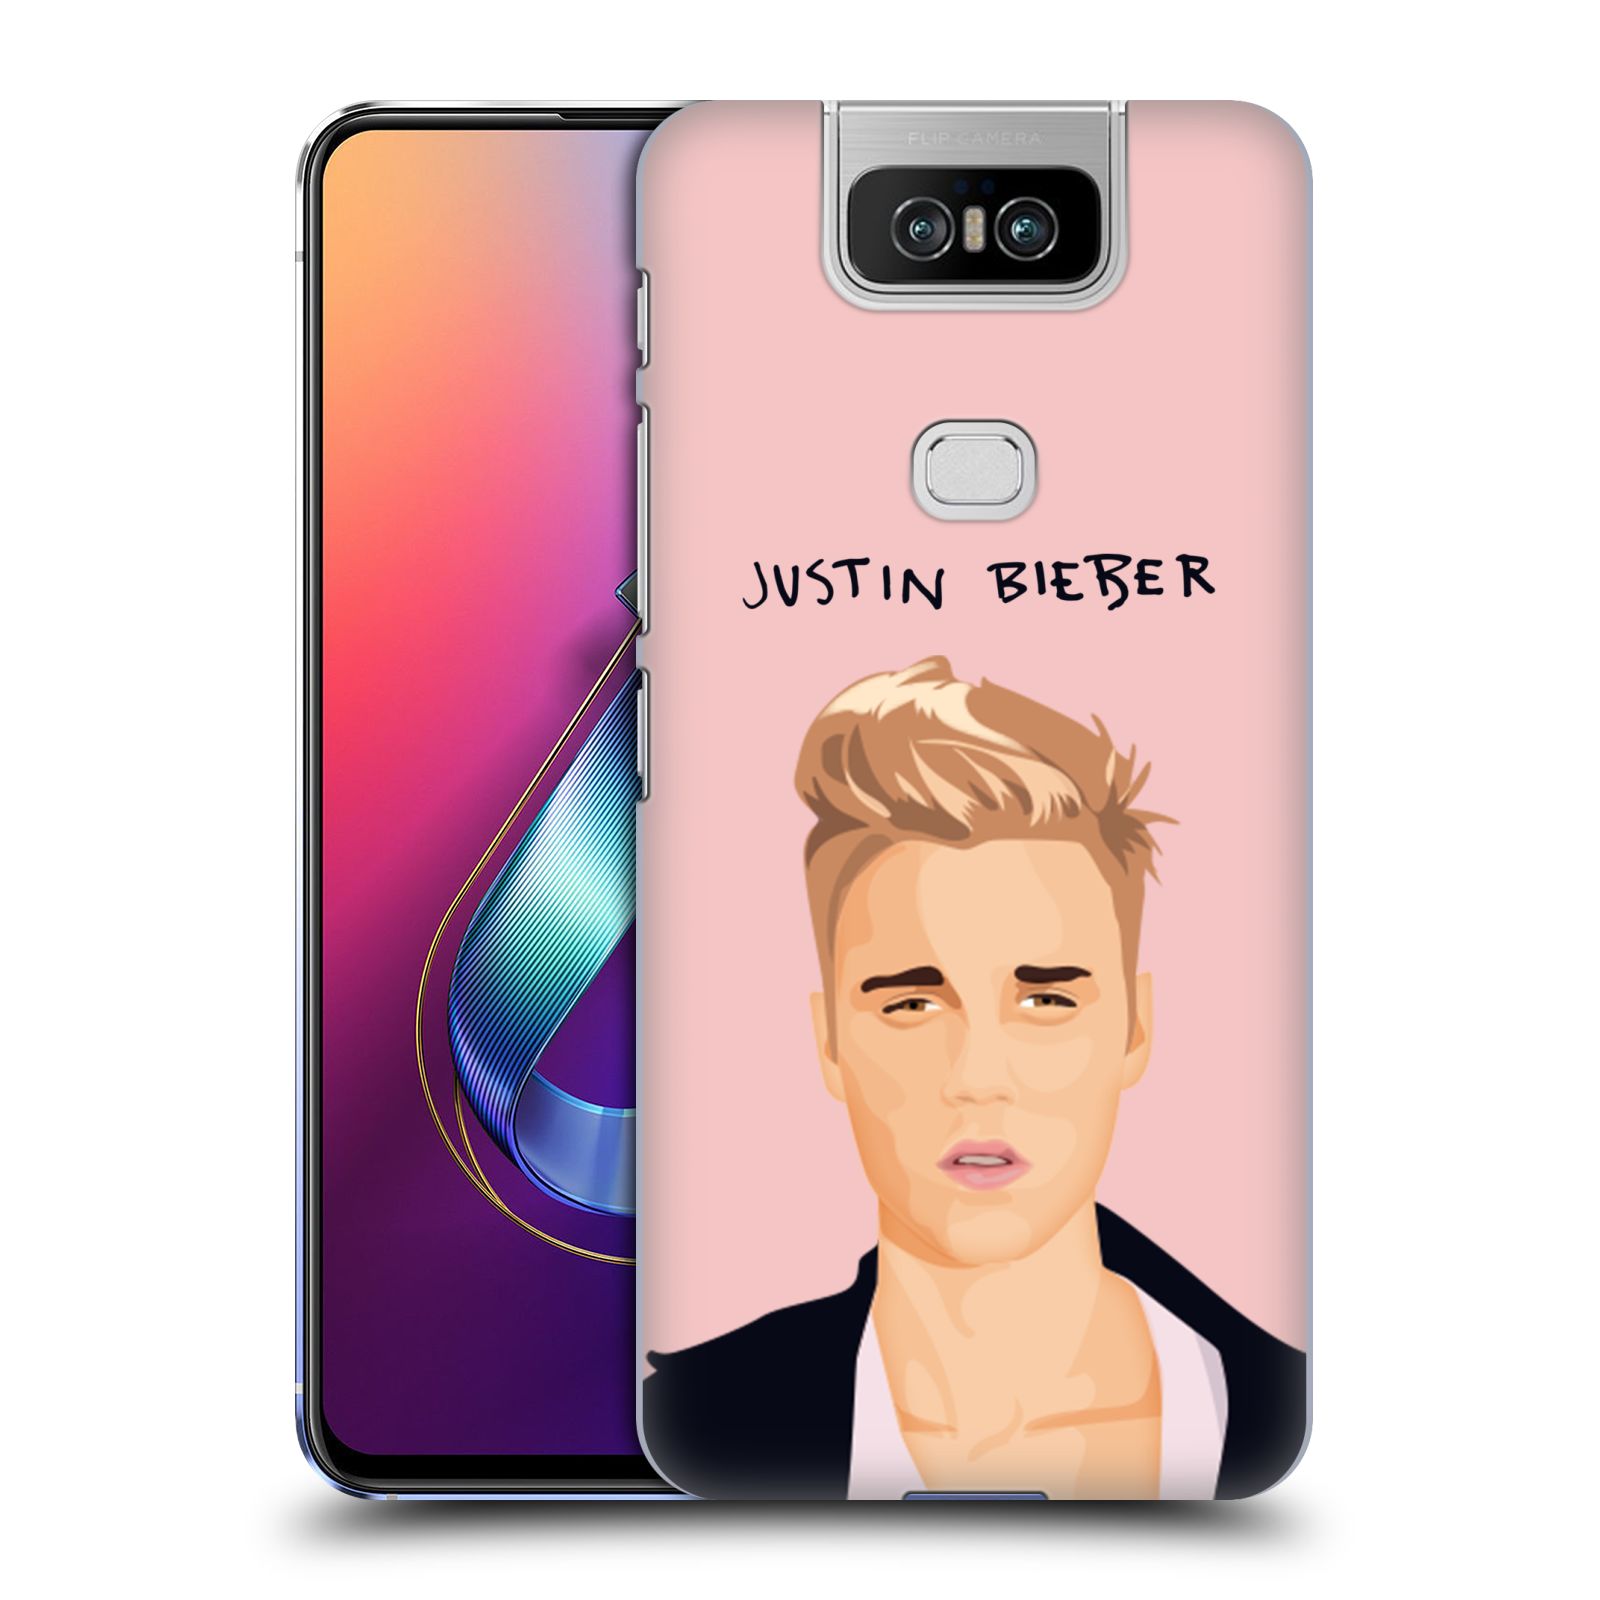 Pouzdro na mobil Asus Zenfone 6 ZS630KL - HEAD CASE - Justin Bieber kreslená tvář růžové pozadí